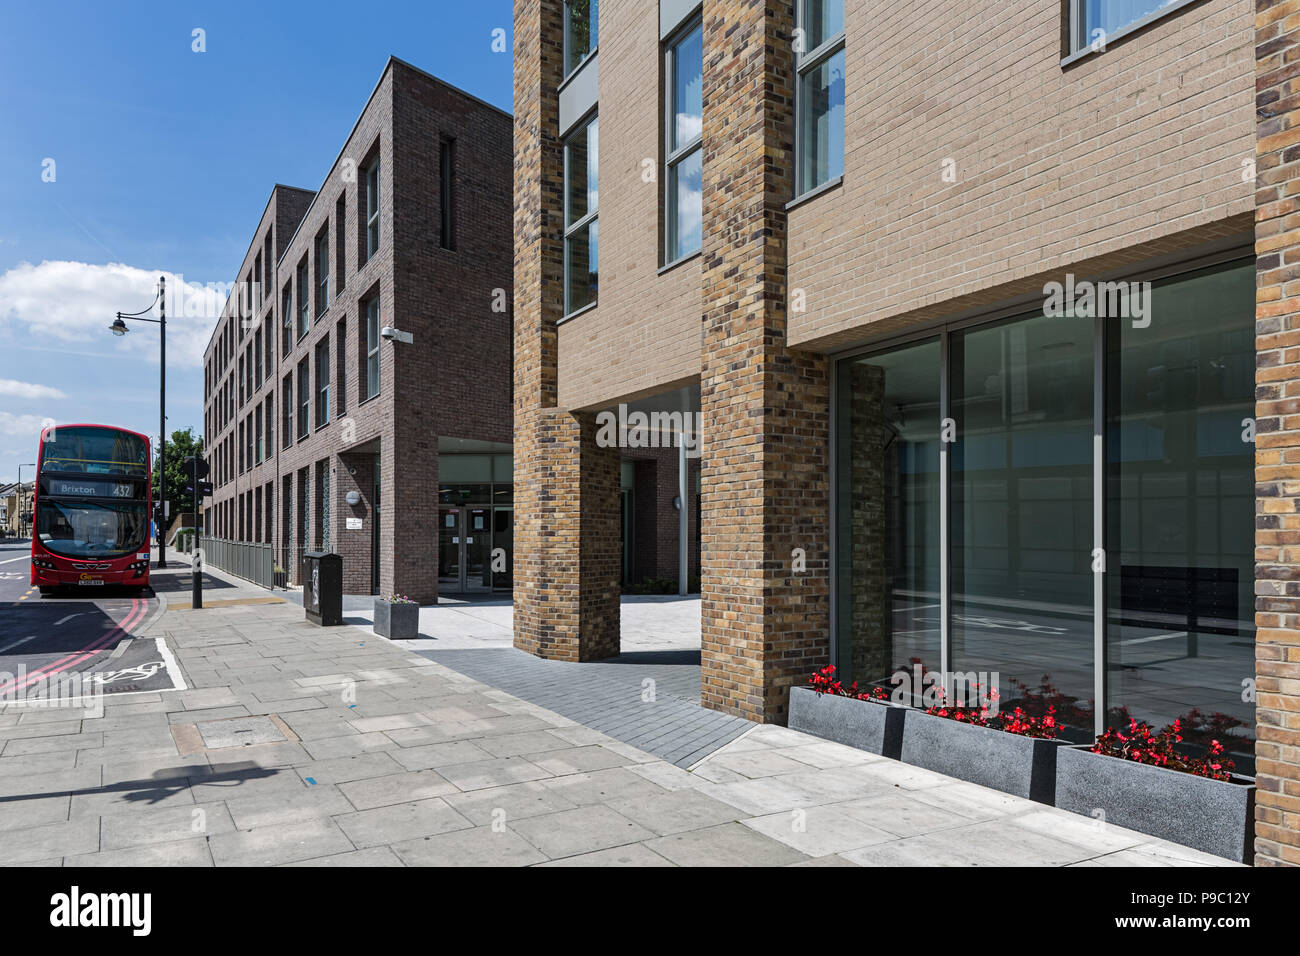 La jonction, Brixton - un projet de régénération urbaine Banque D'Images